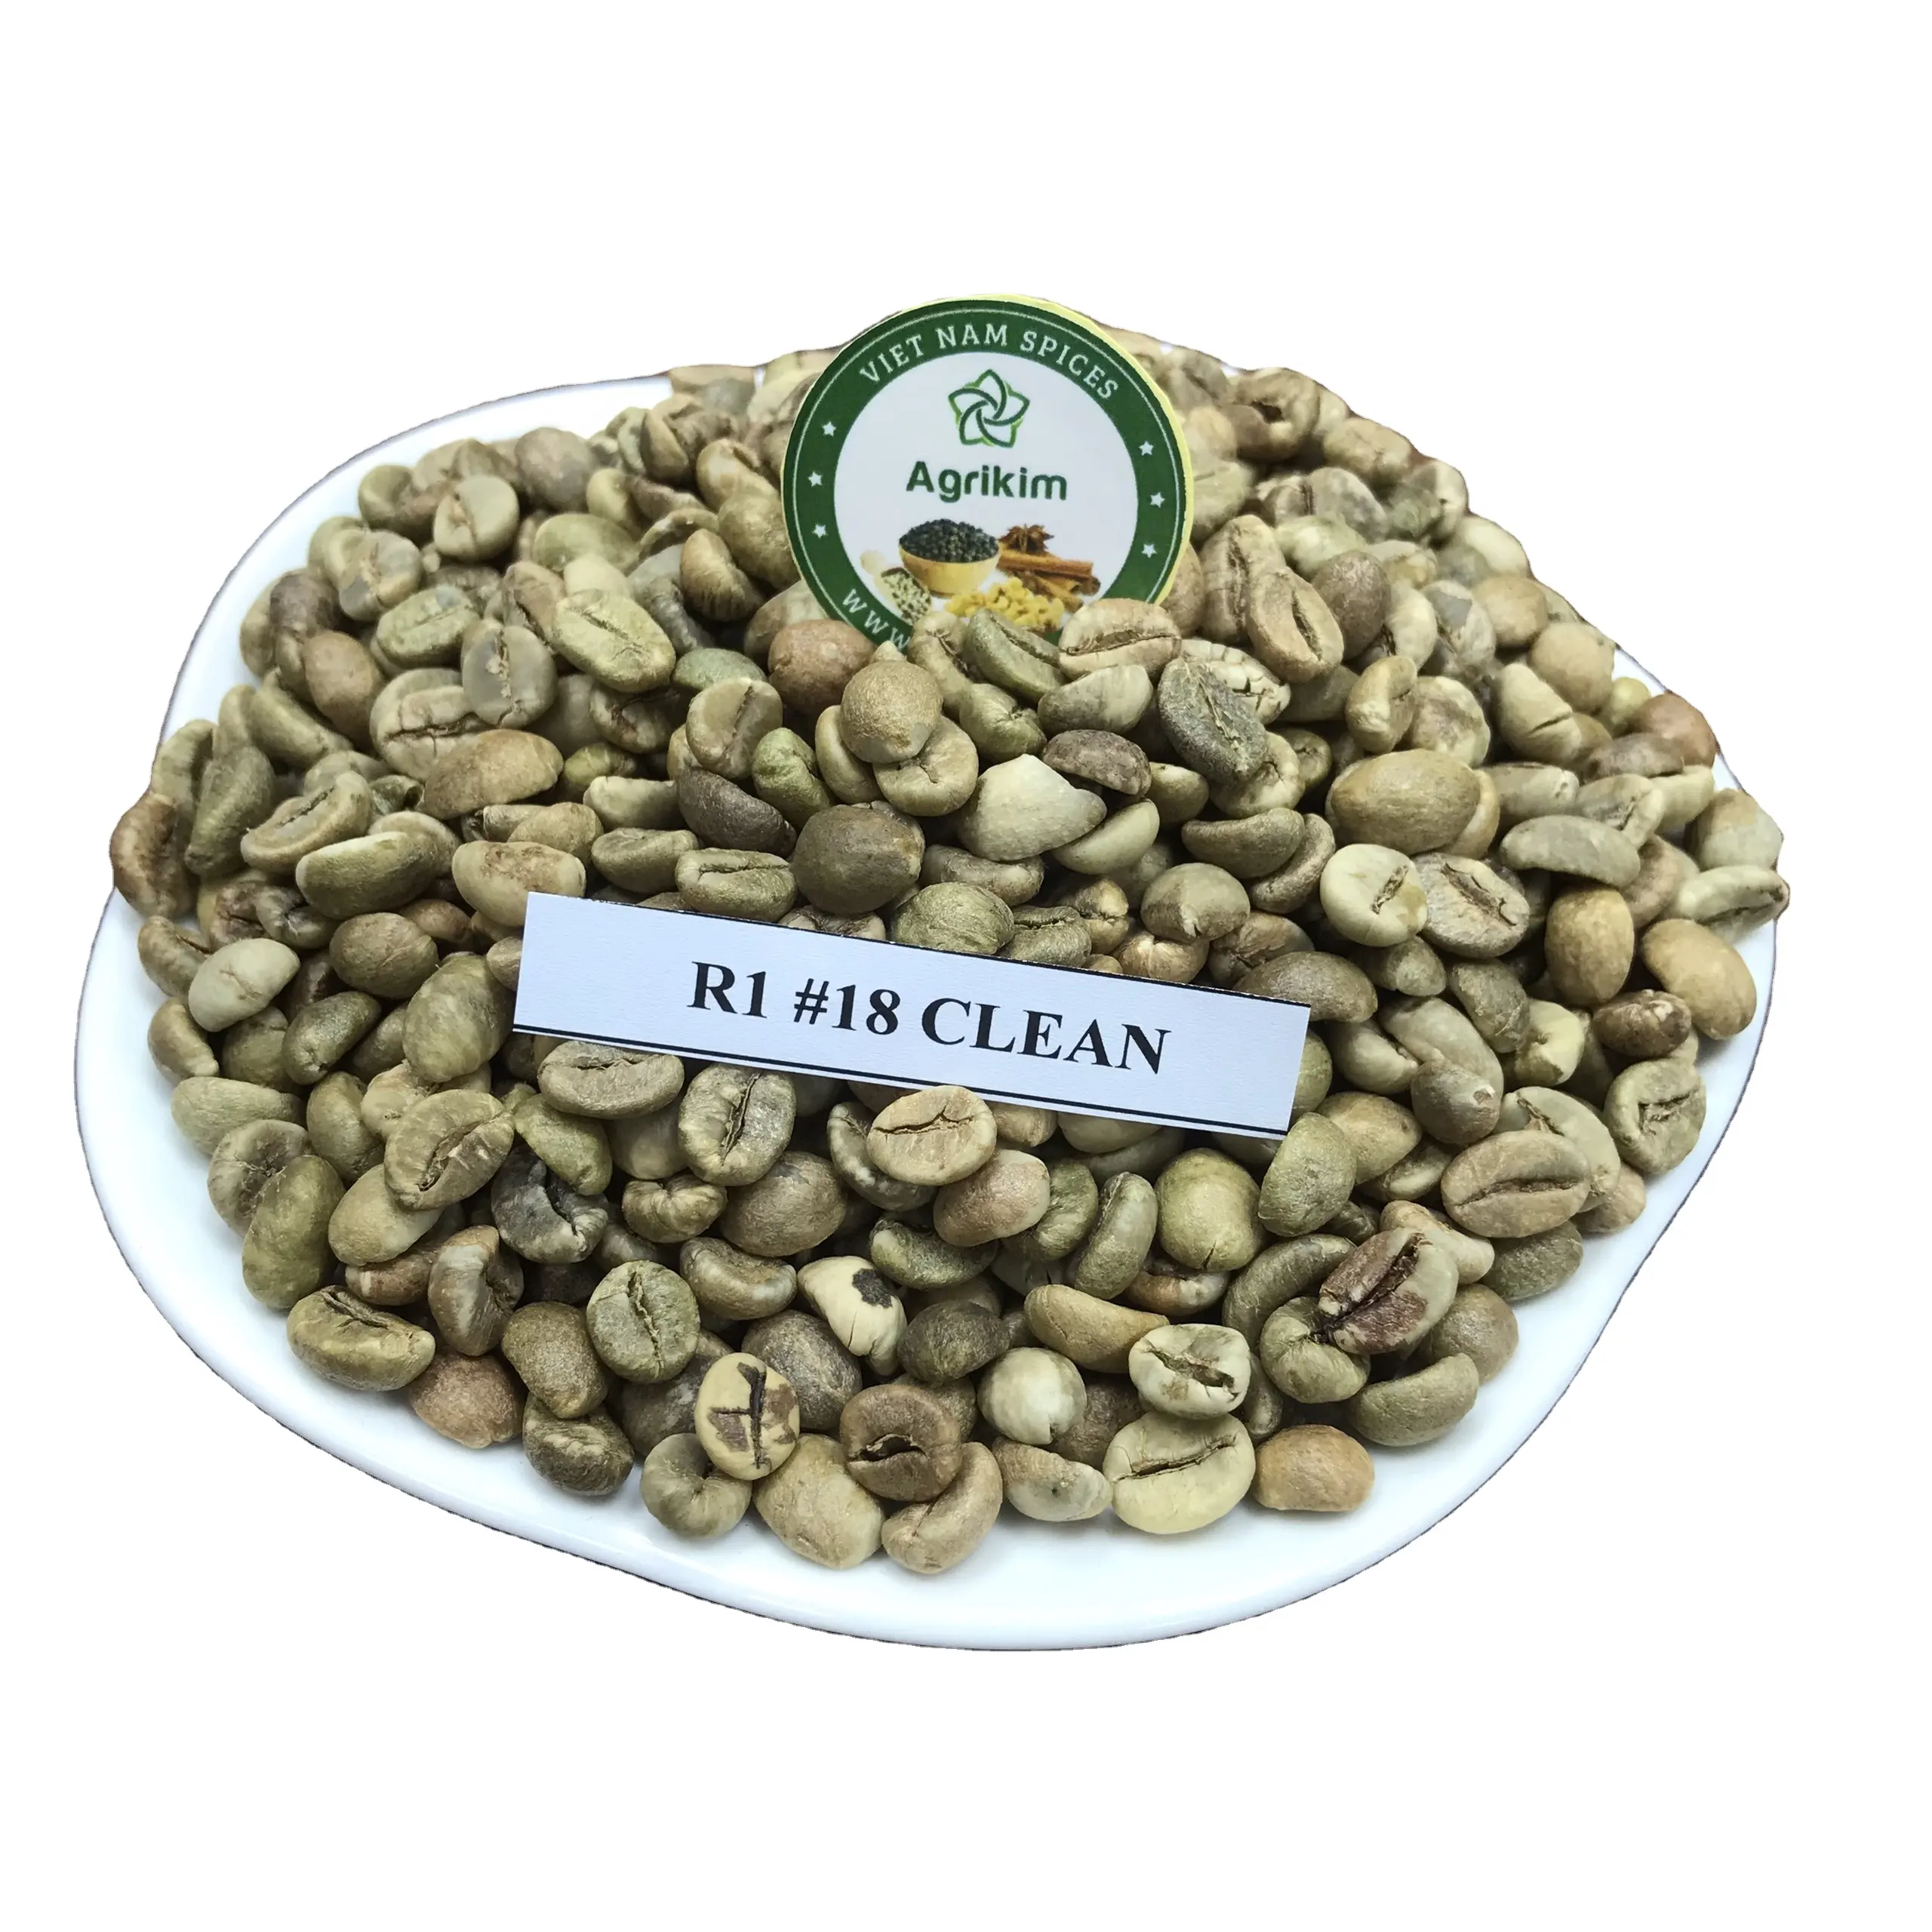 Granos de café verde vietnamita de alta calidad, granos de café arábigos para importación, granos de café a granel, al mejor precio, venta al por mayor